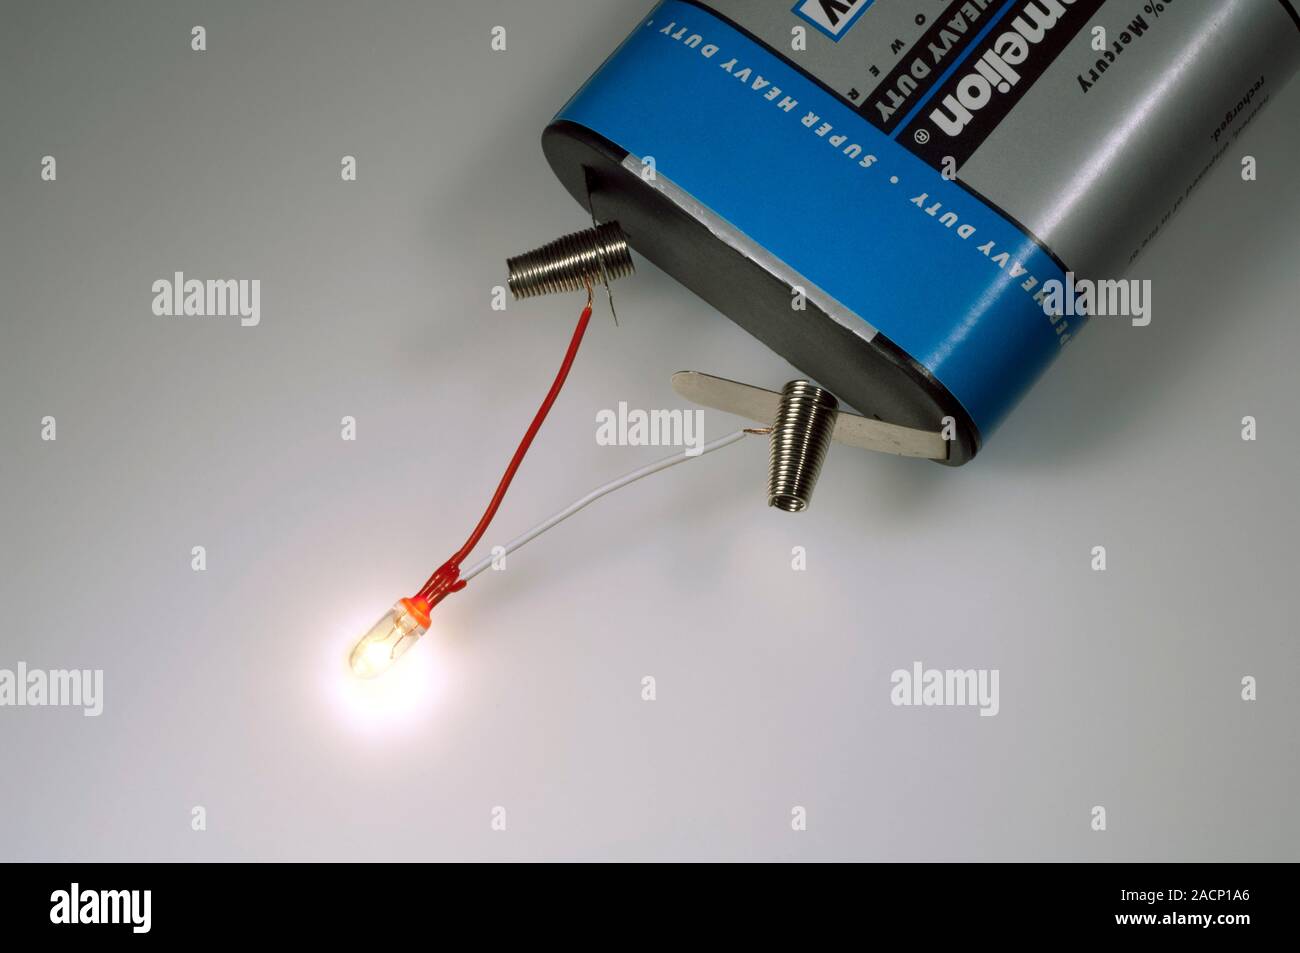 Miniatur-Glühlampe und Batterie. Kabel-ended Miniatur Glühbirne auf die  Pole einer Zink-Kohle Batterie. Im Gegensatz zu grösseren Inca  Stockfotografie - Alamy